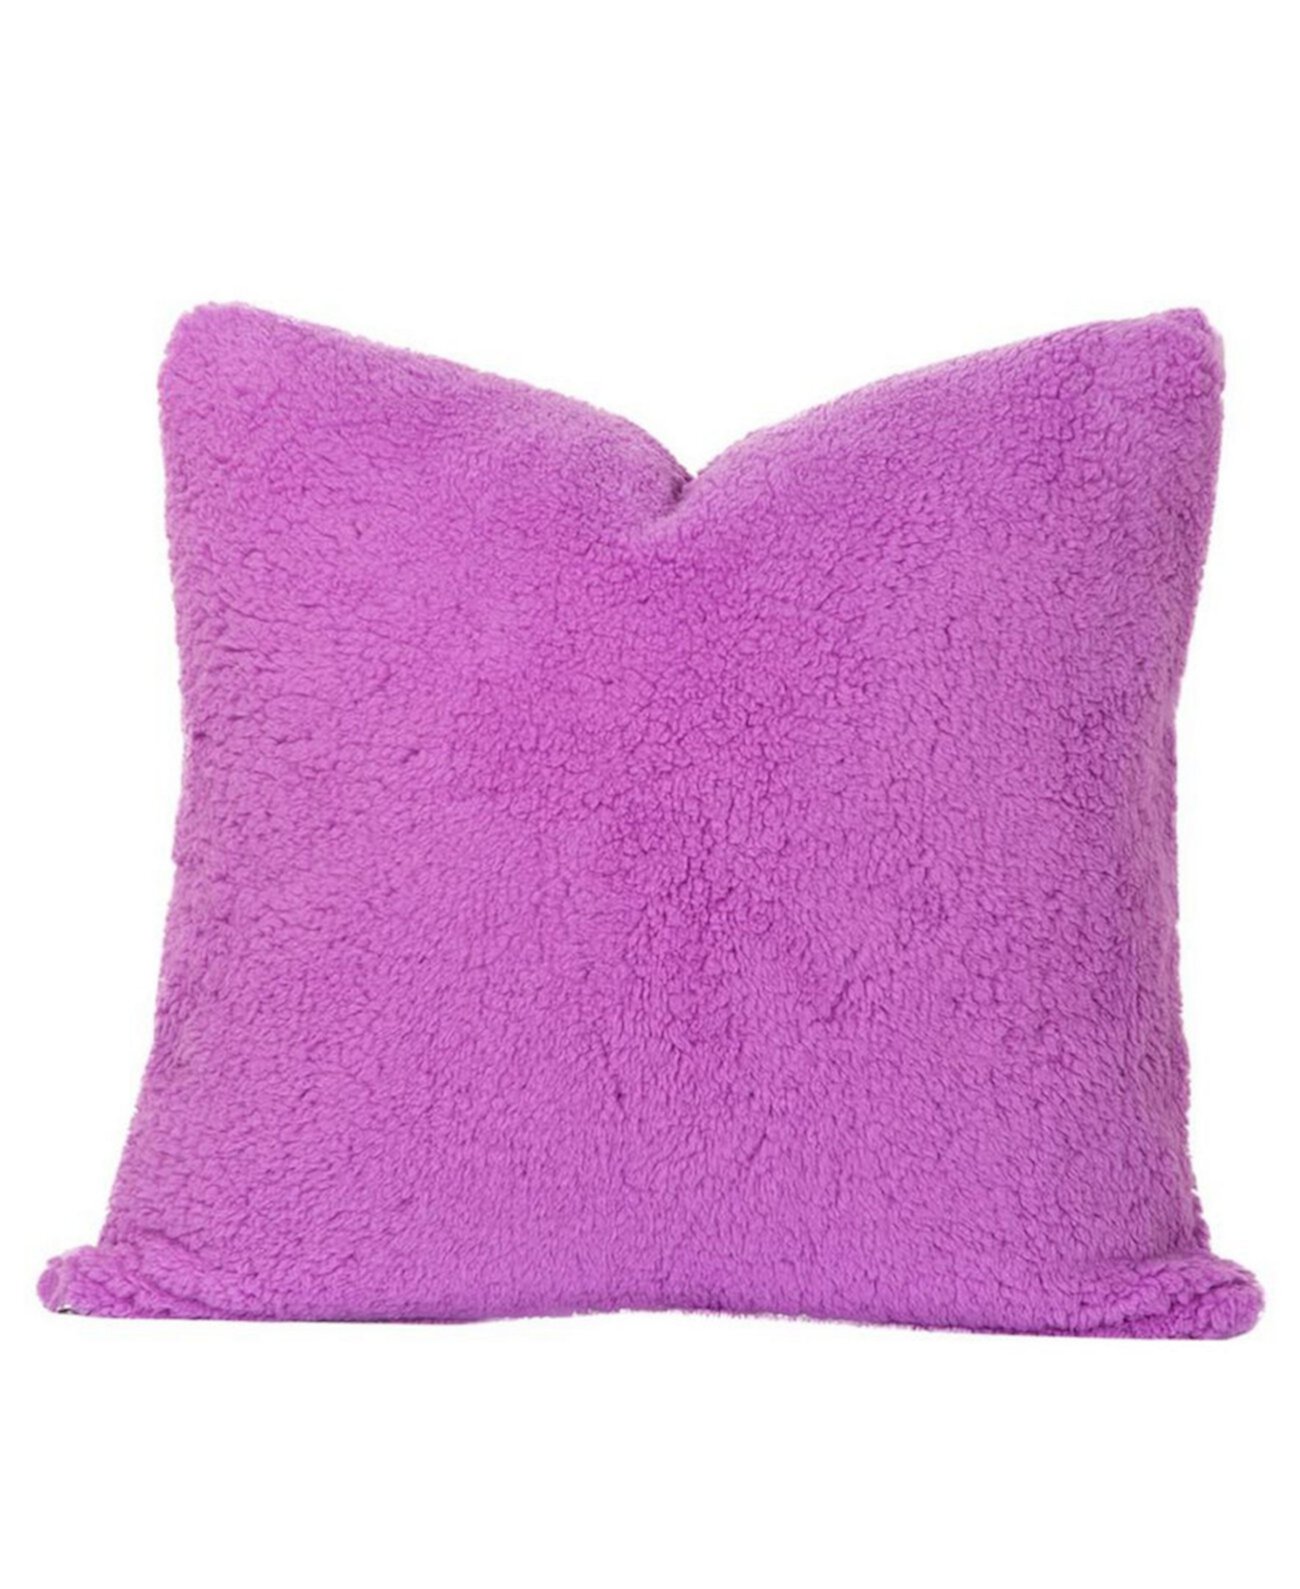 Игривая плюшевая яркая фиолетовая дизайнерская подушка размером 16 дюймов Crayola